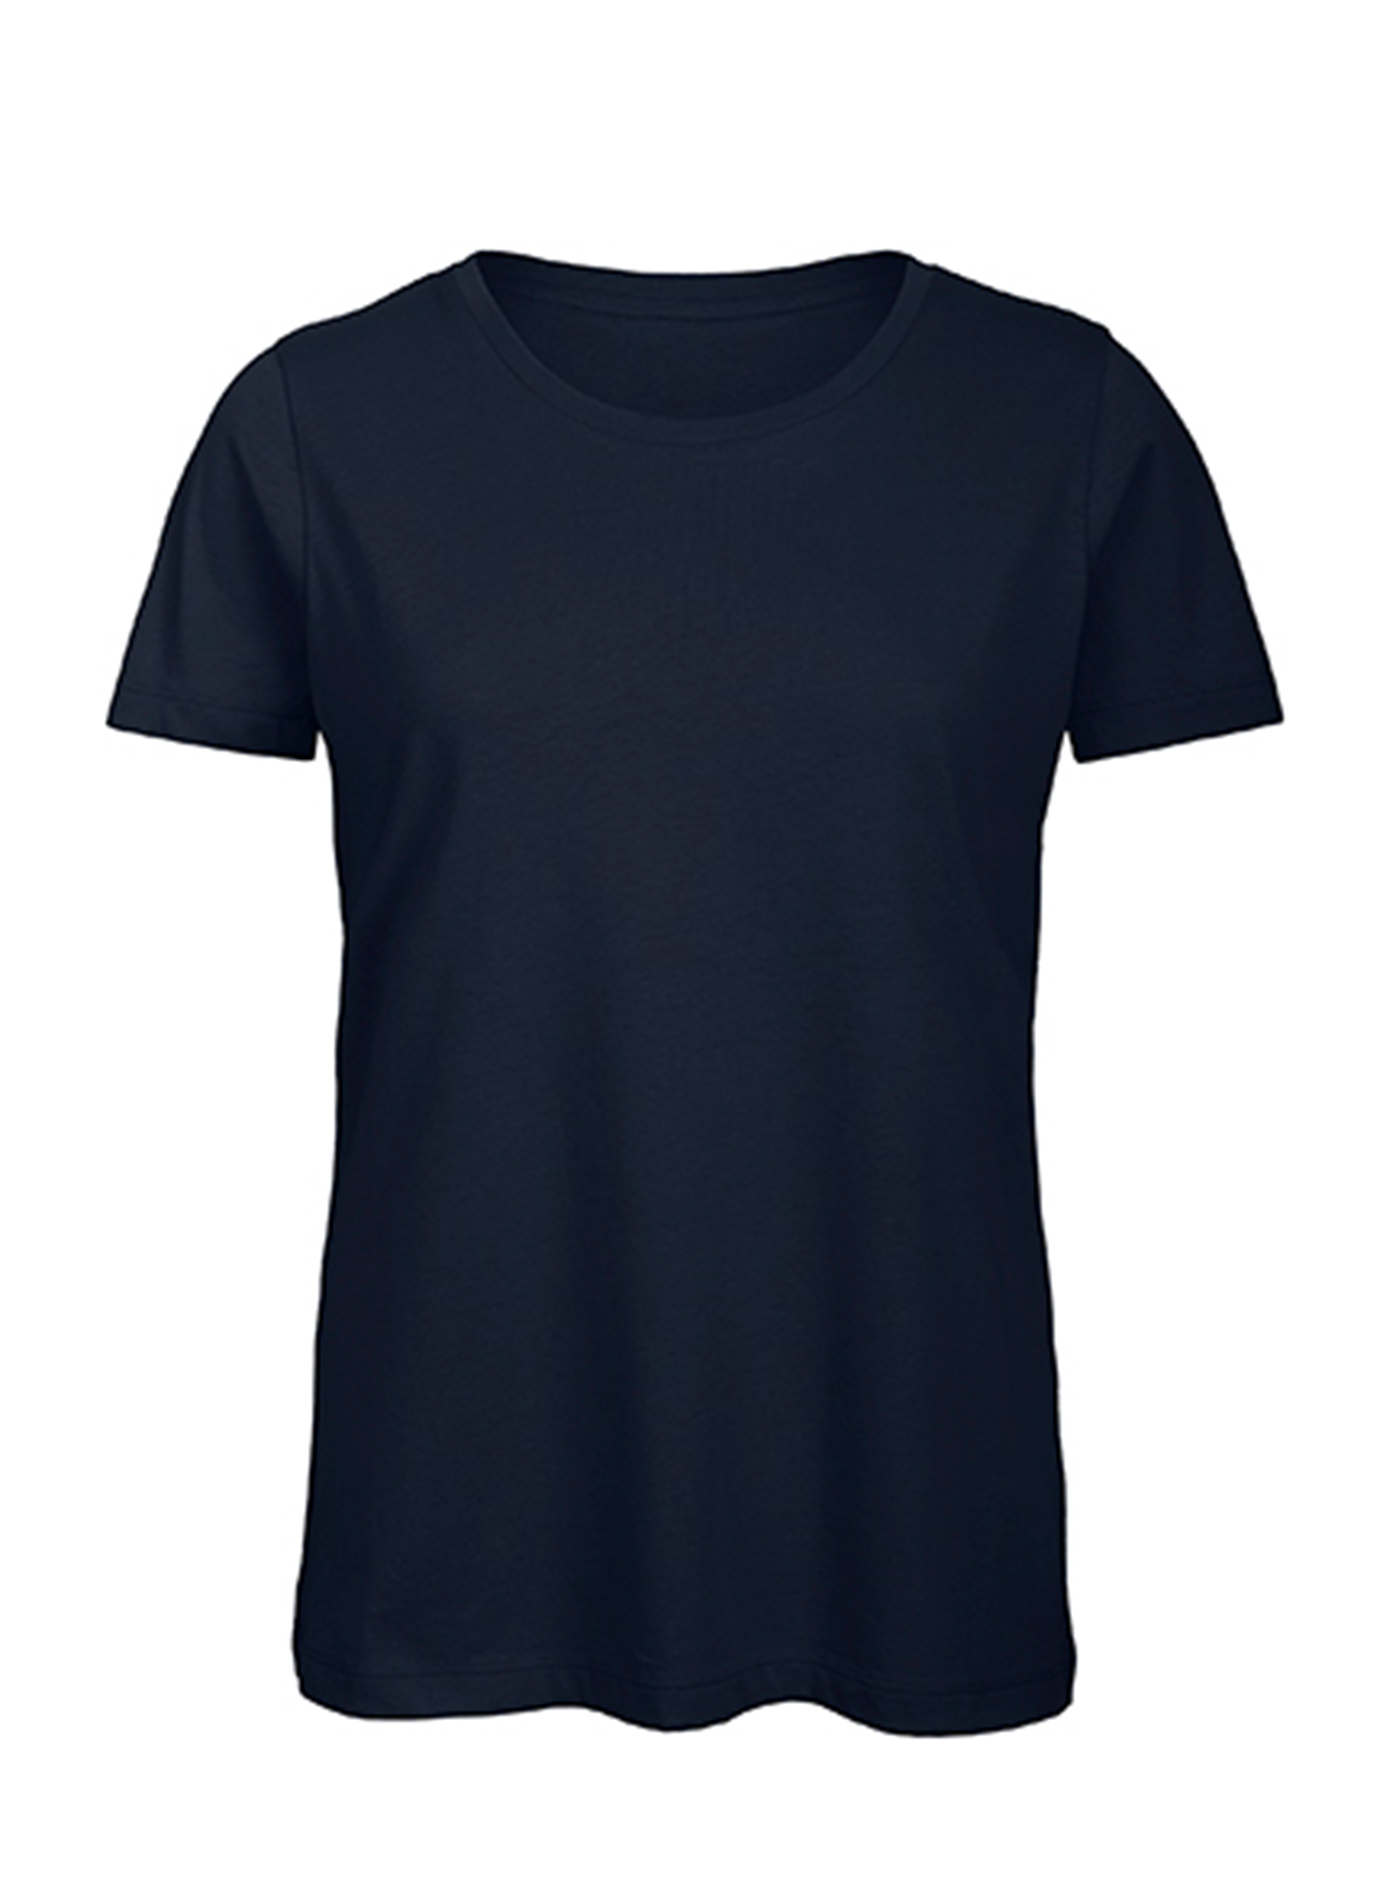 Dámské tričko B&C Collection Inspire - Námořnická modrá S